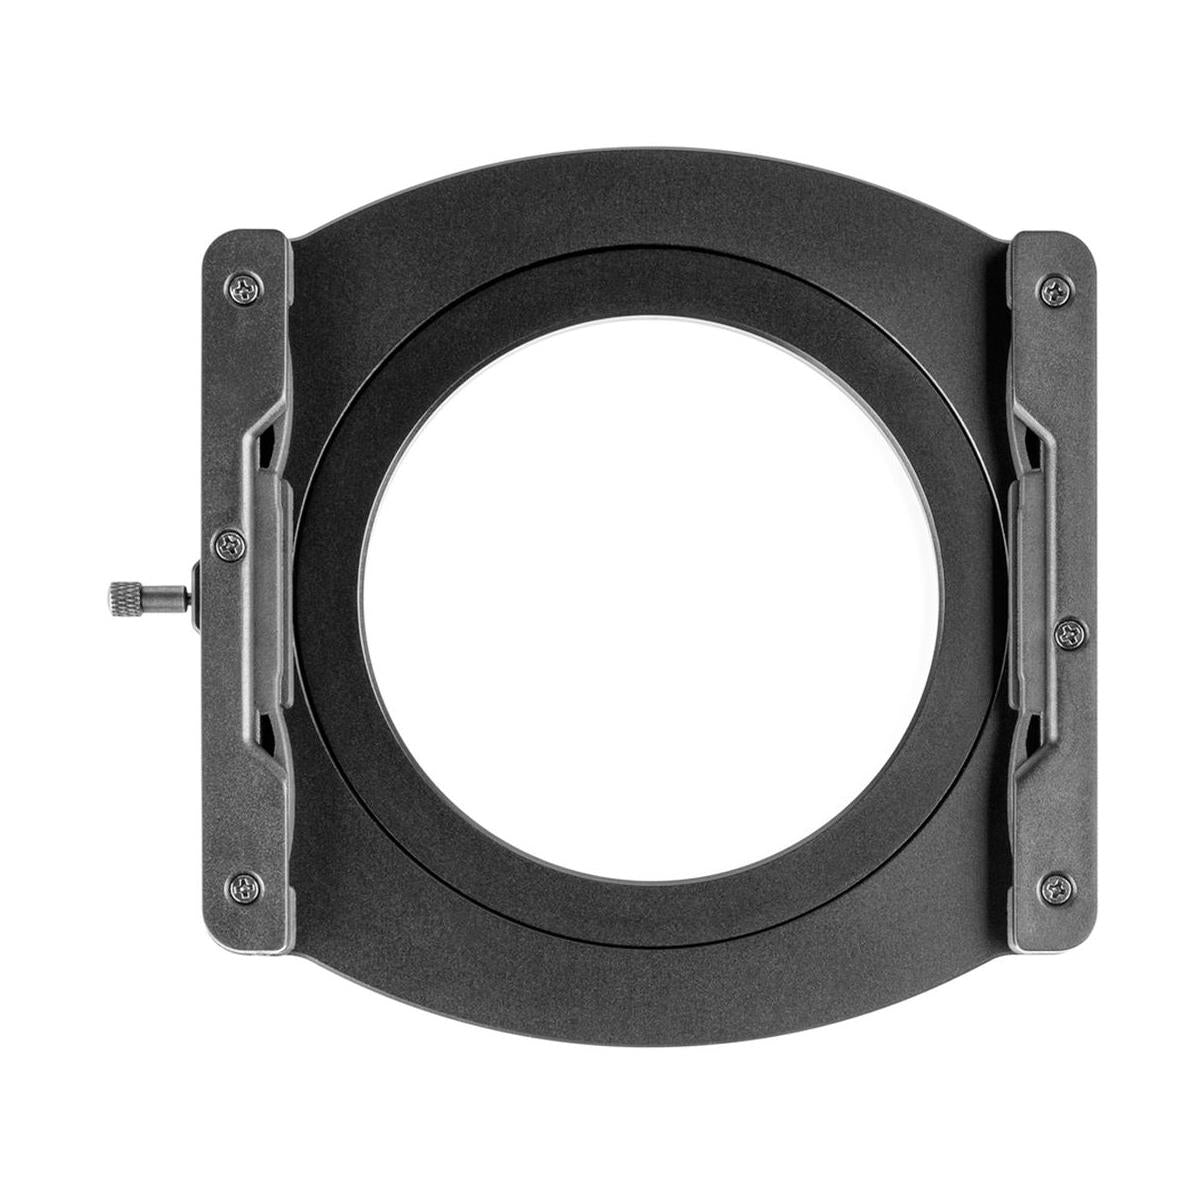 NiSi V5 ALPHA 100mm Aluminium Filter Holder with 72mm Adapter Ring